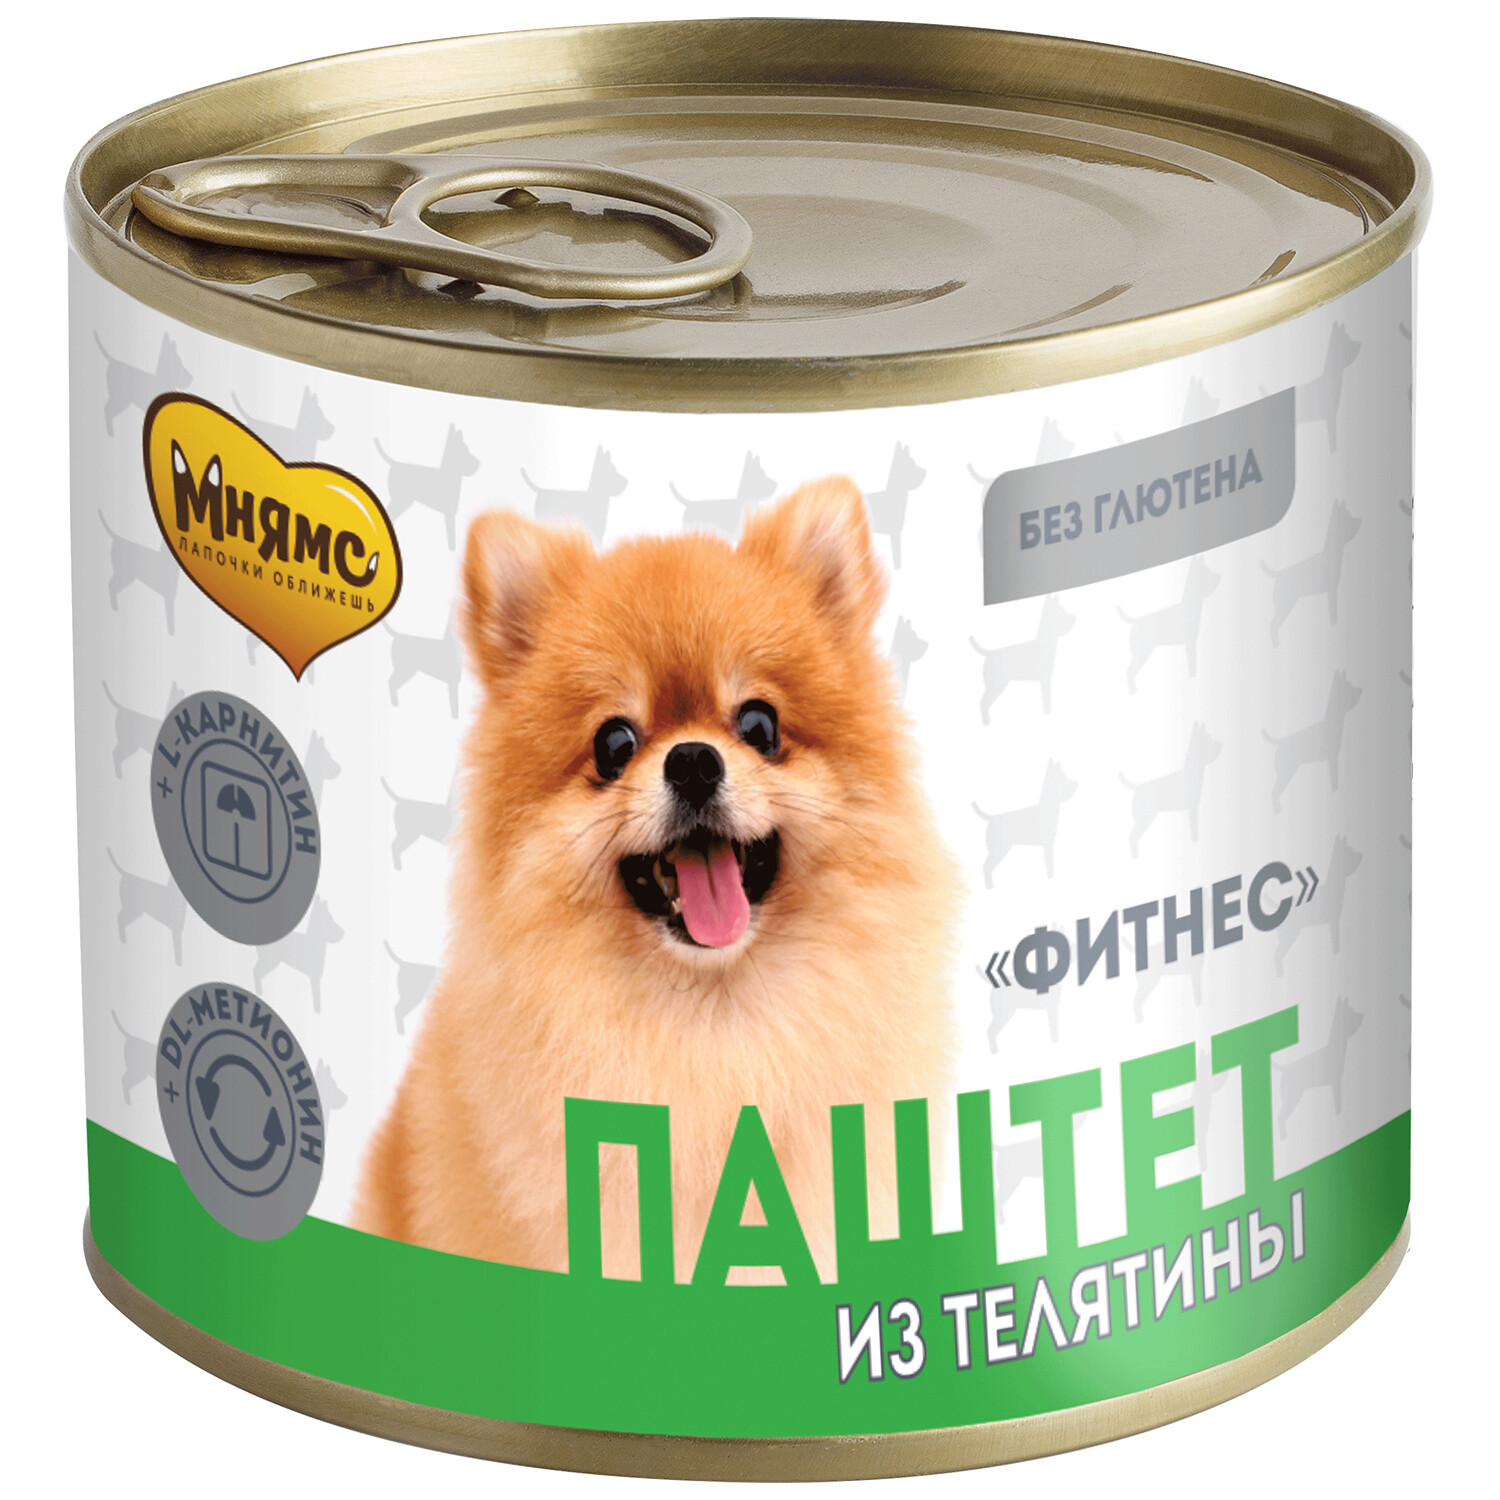 Мнямс консервы Паштет из телятины для собак всех пород «ФИТНЕС» 200 г